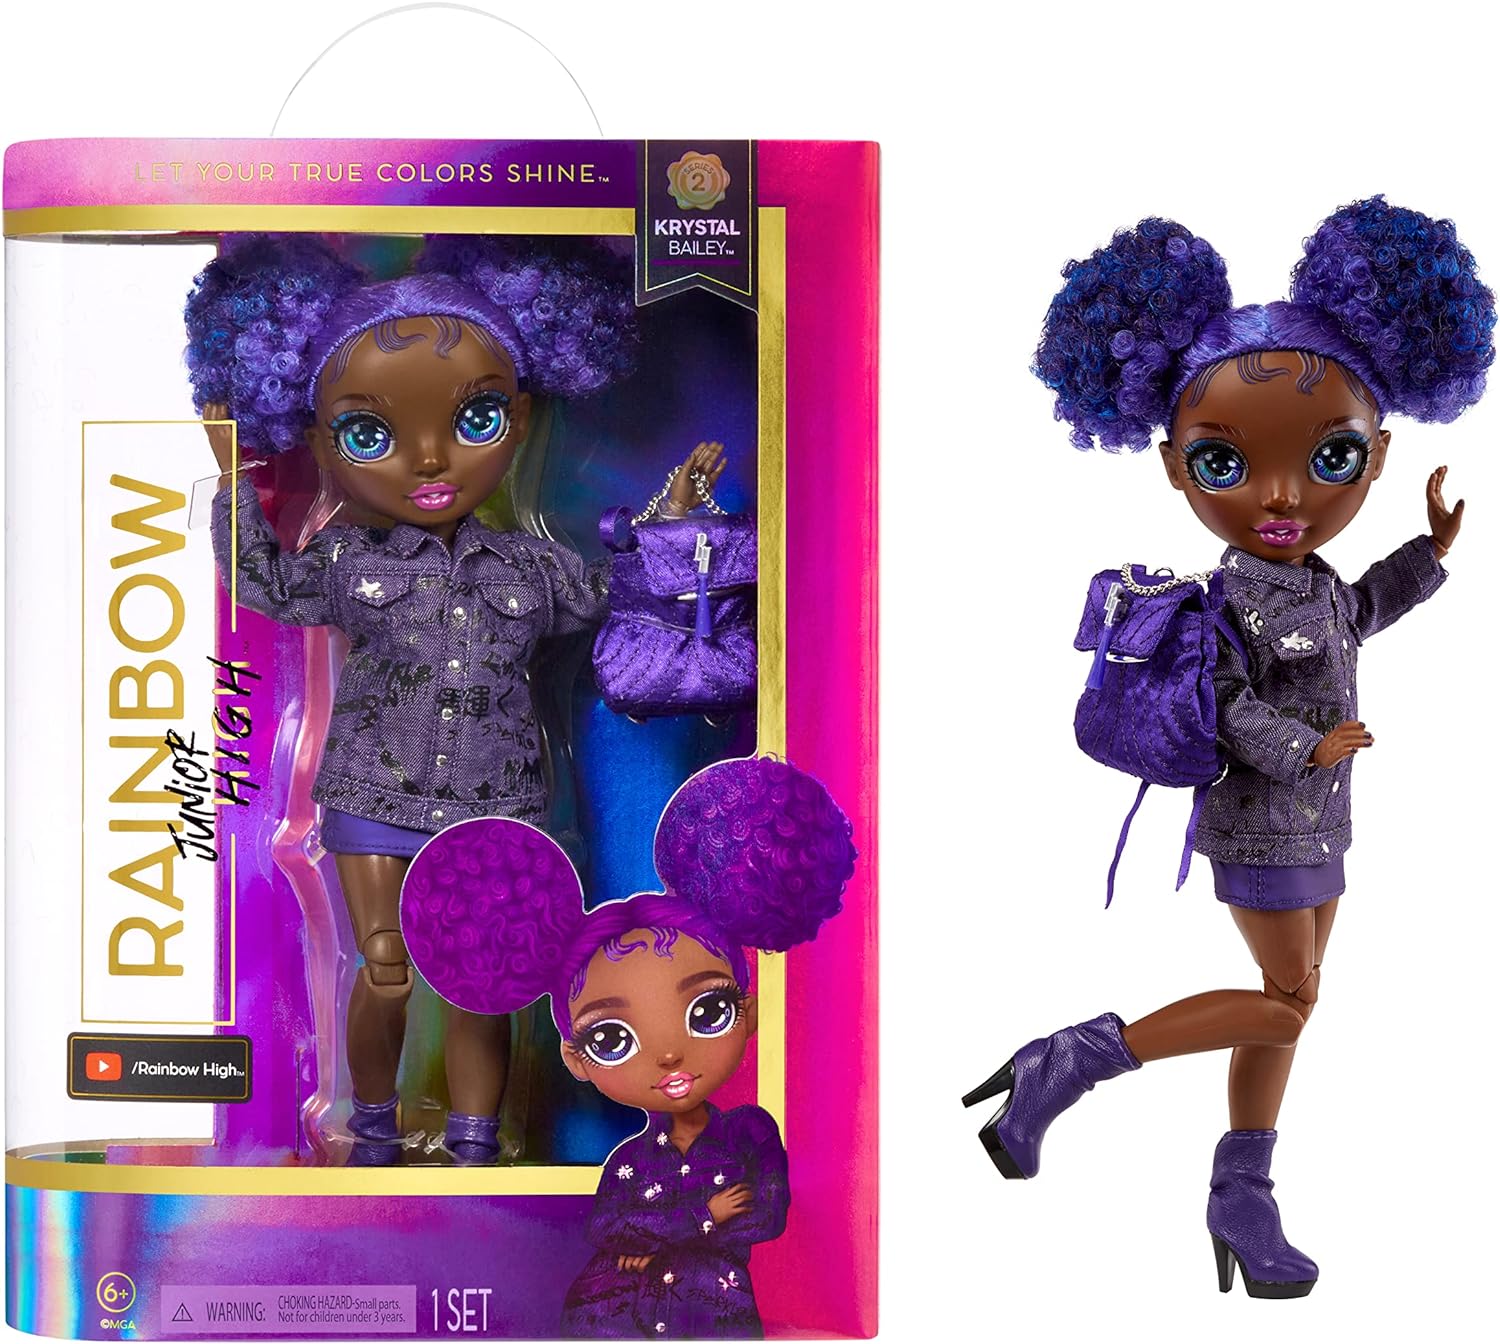 Rainbow High Jr High KRYSTAL BAILEY 9Inch Purple Fashion Doll